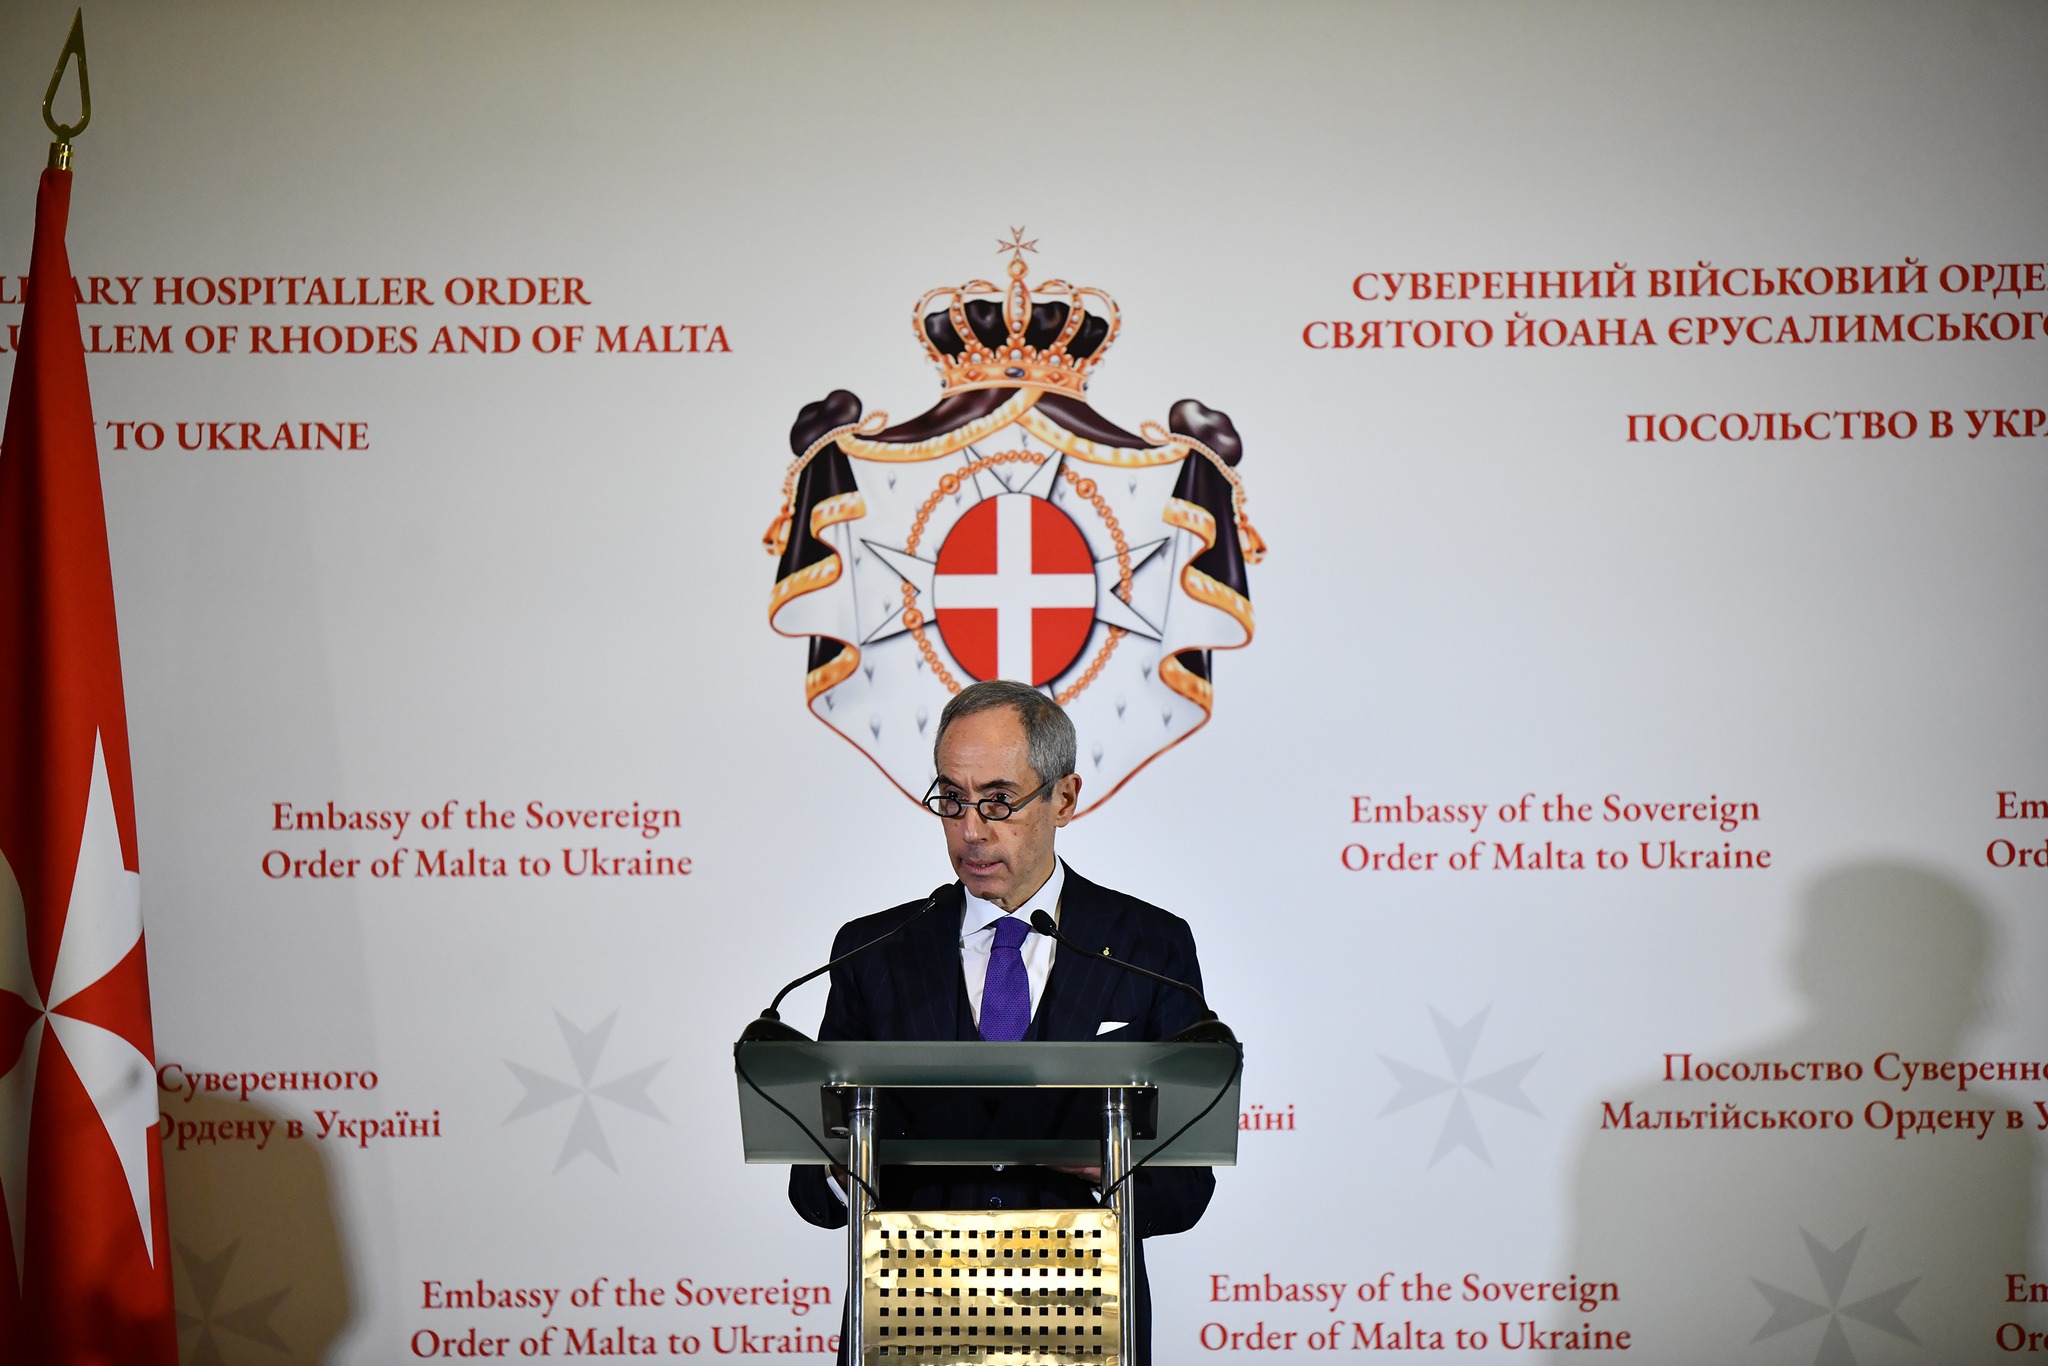 Der Souveräne Malteserorden feiert 15 Jahre diplomatische Beziehungen zur Ukraine